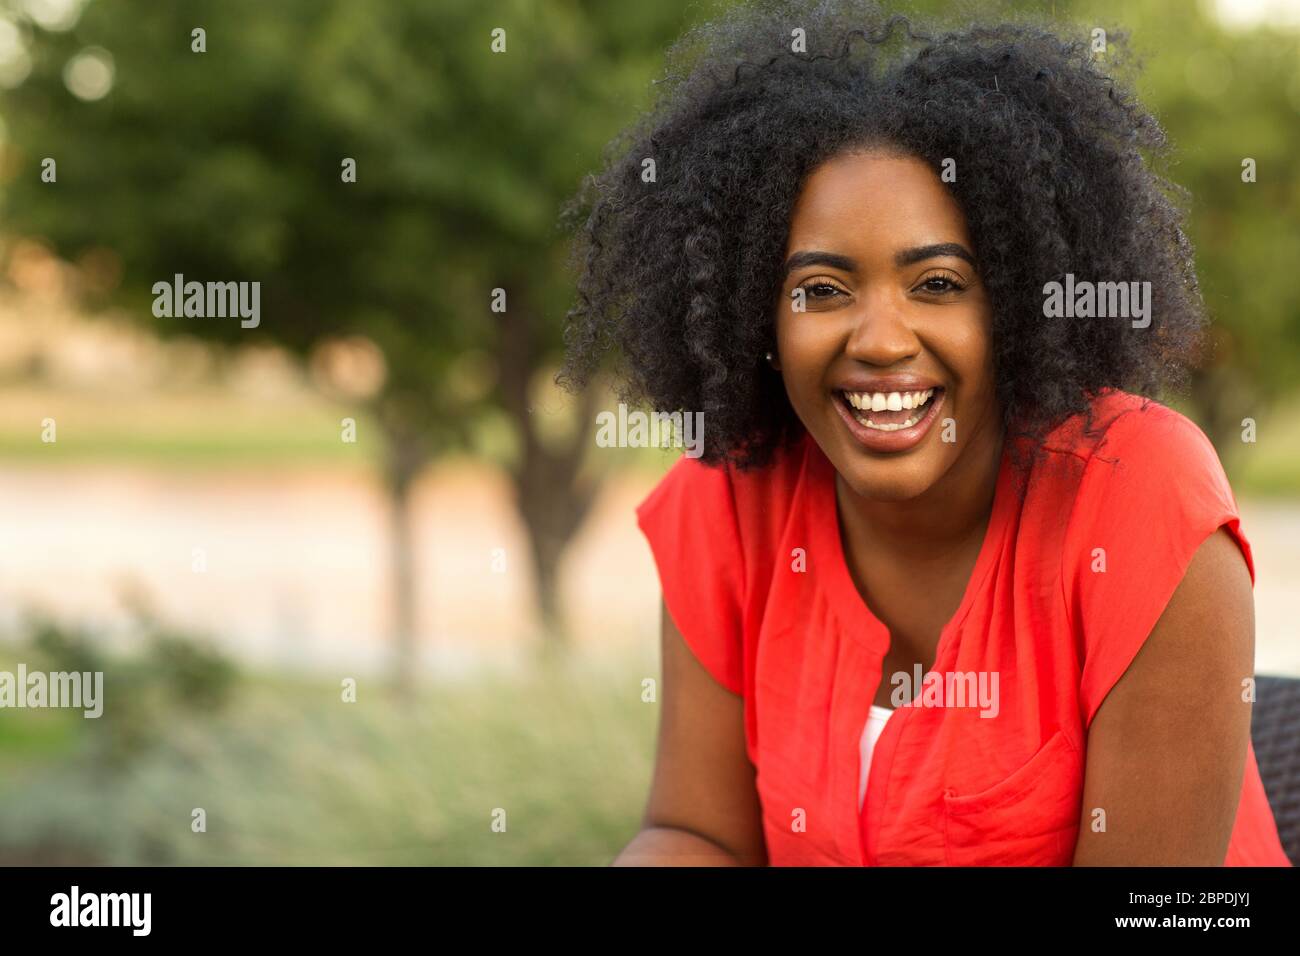 Gerne zuversichtlich African American woman smiling außerhalb. Stockfoto